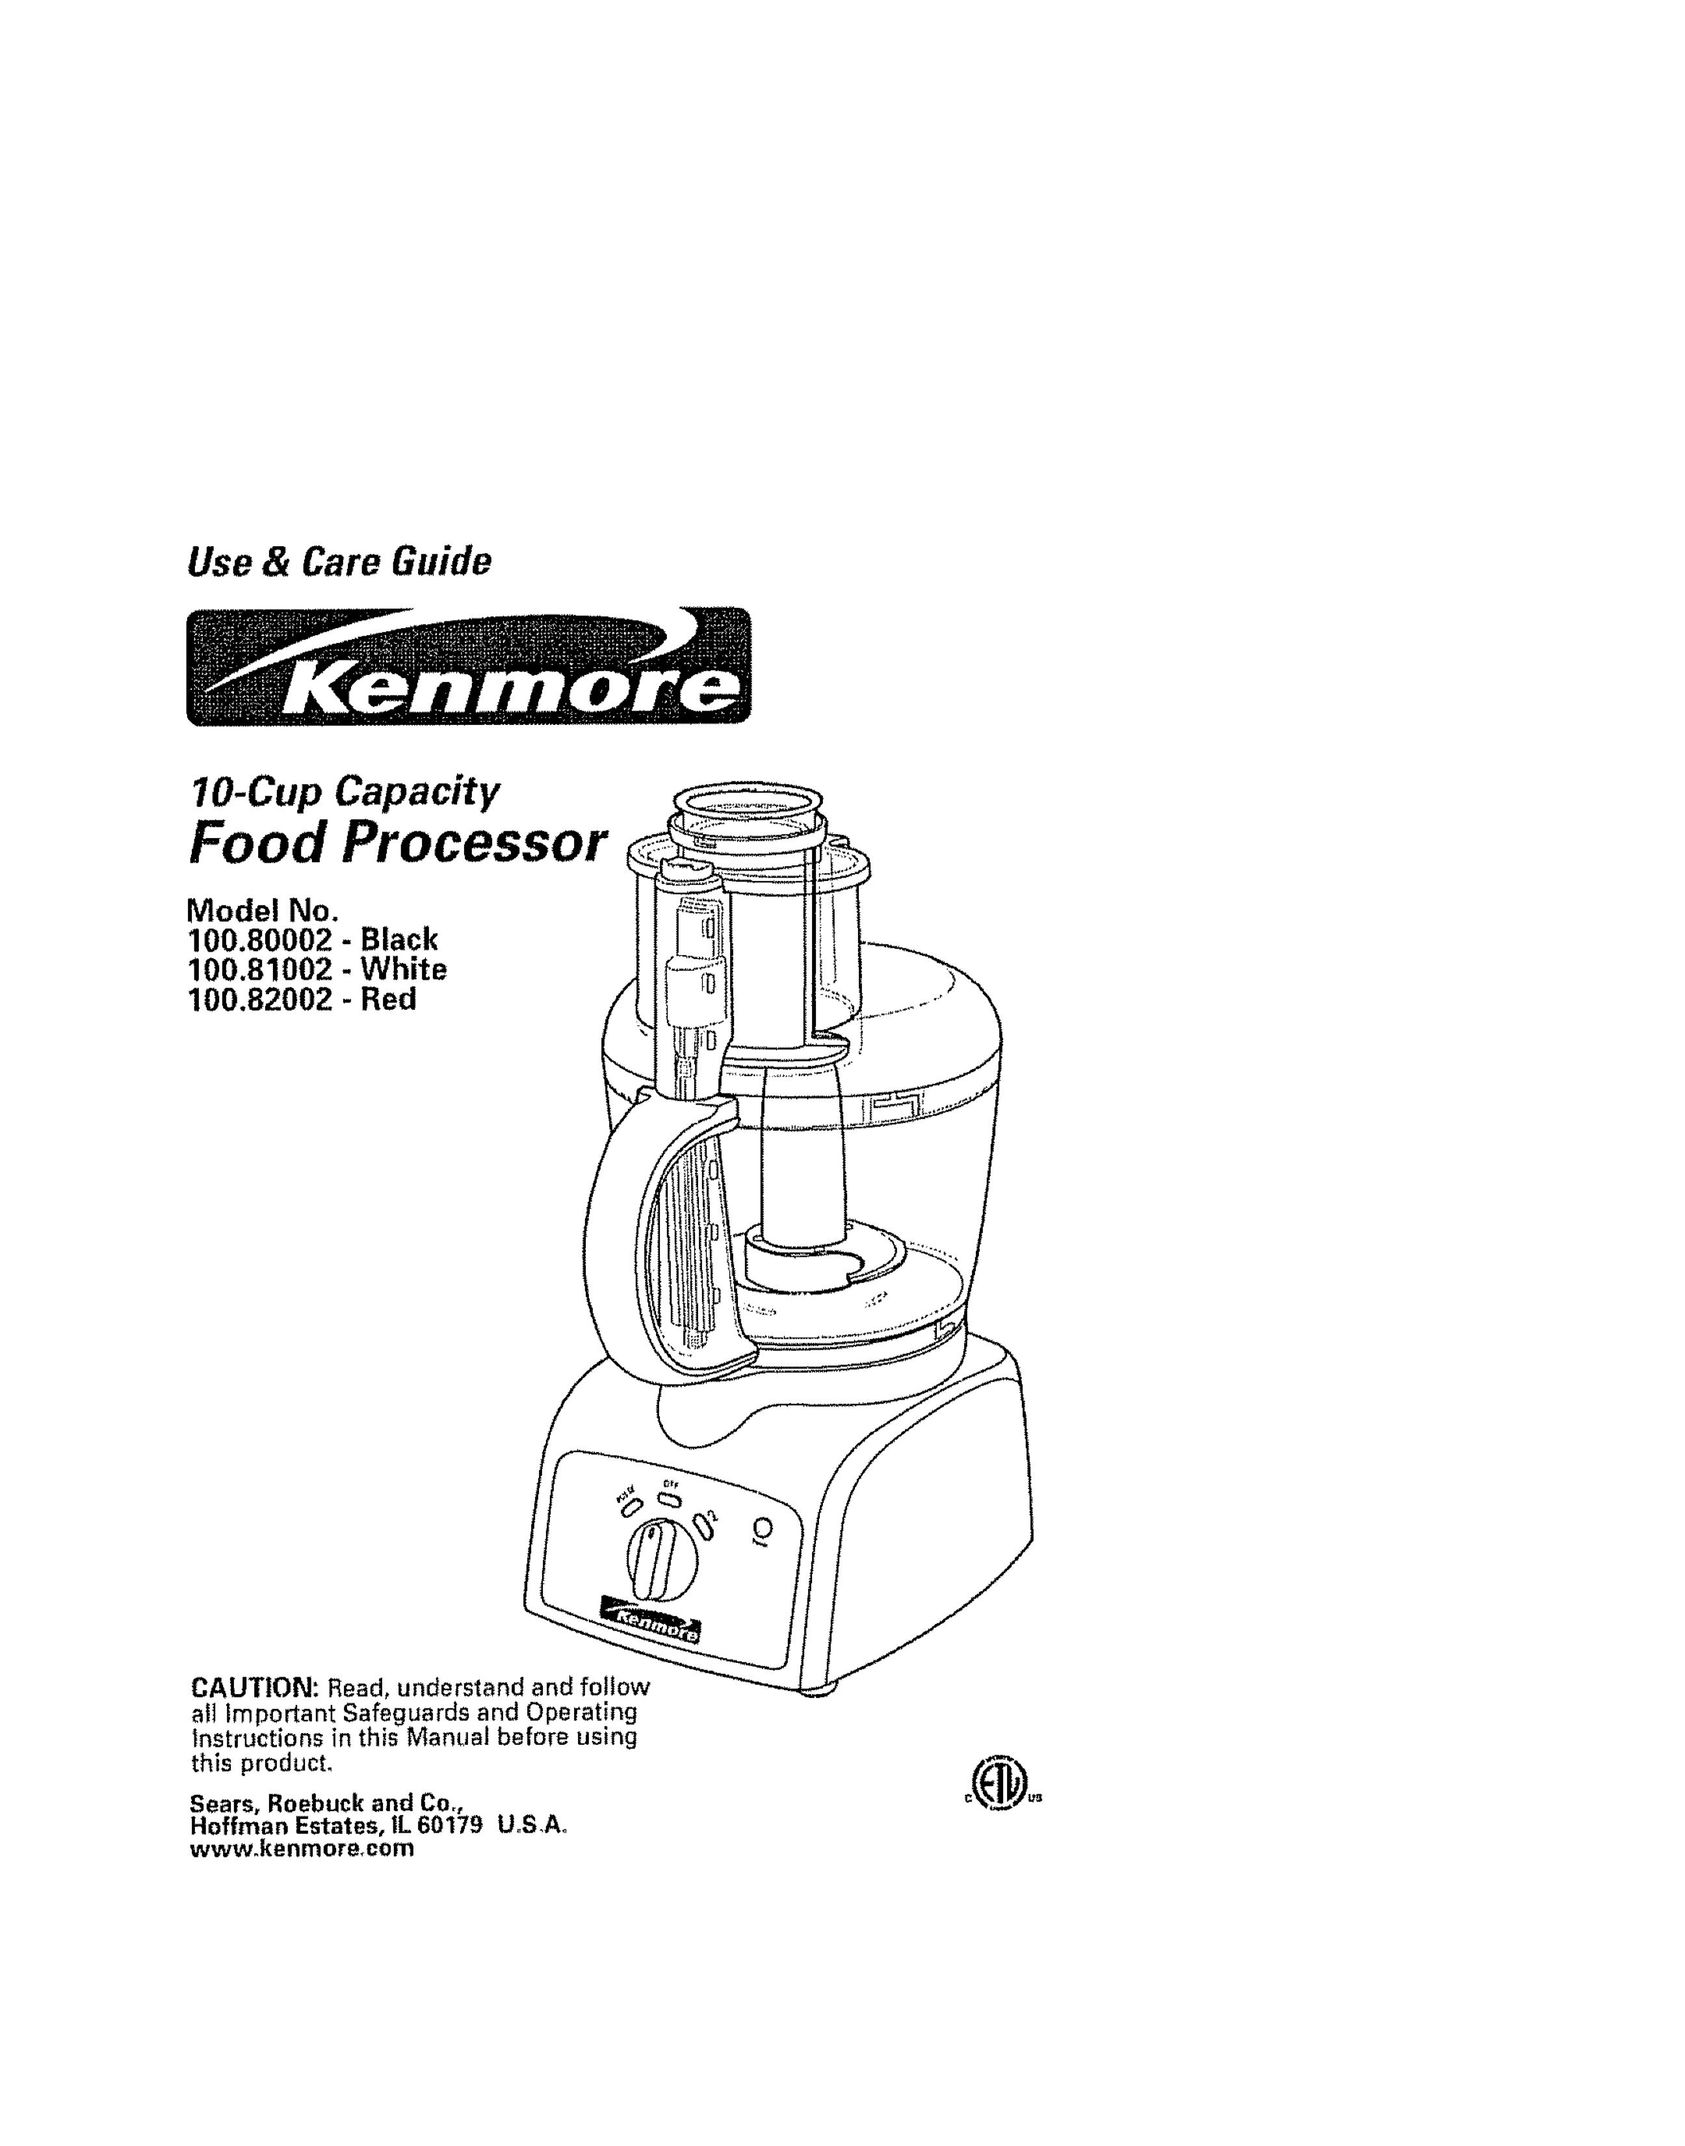 Kenmore 100.82002 Food Processor User Manual